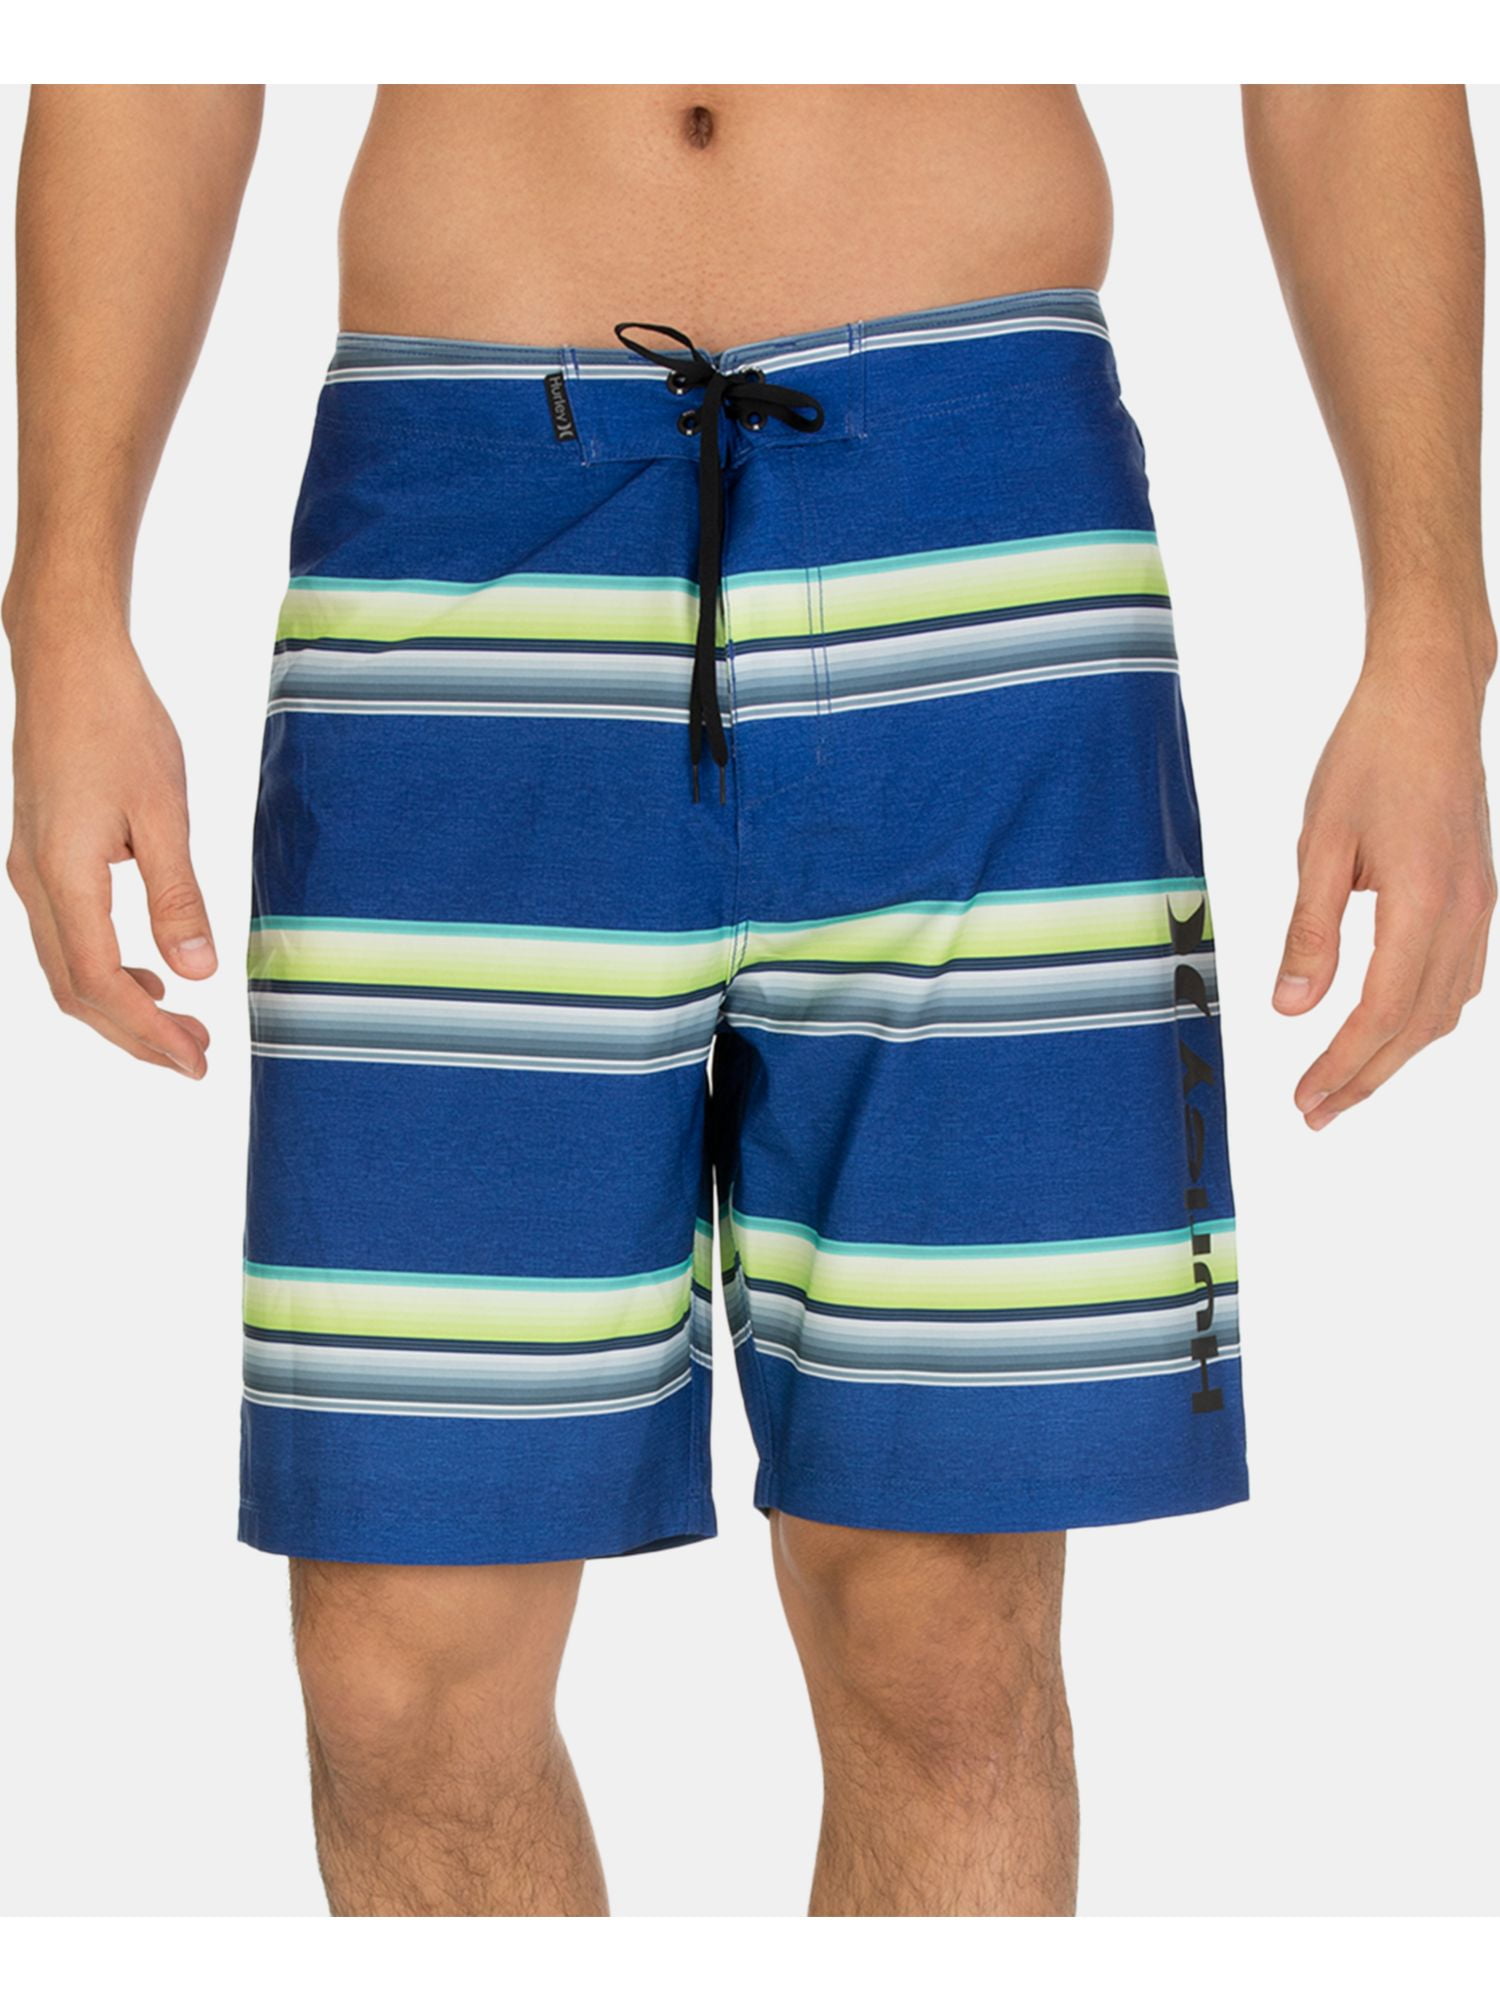 Шорты Hurley 164. Бордшорты мужские для купания Остин. Шорты Funday мужские. Мужские пляжные шорты голубые с зеленым.